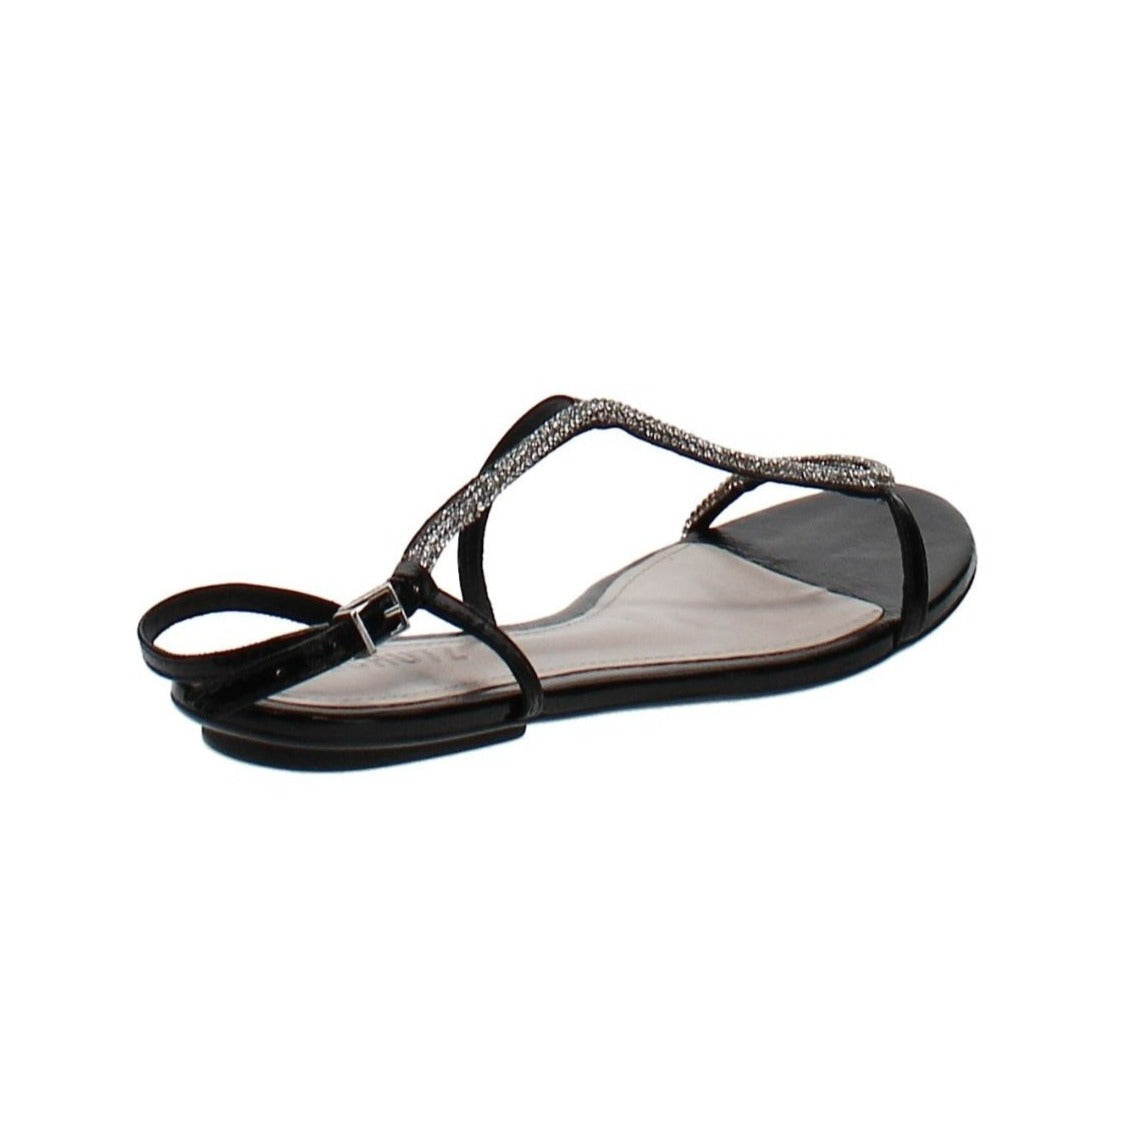 Schutz | Georgia Lee Embellished Slingback Sandals | Black | Size 6.5